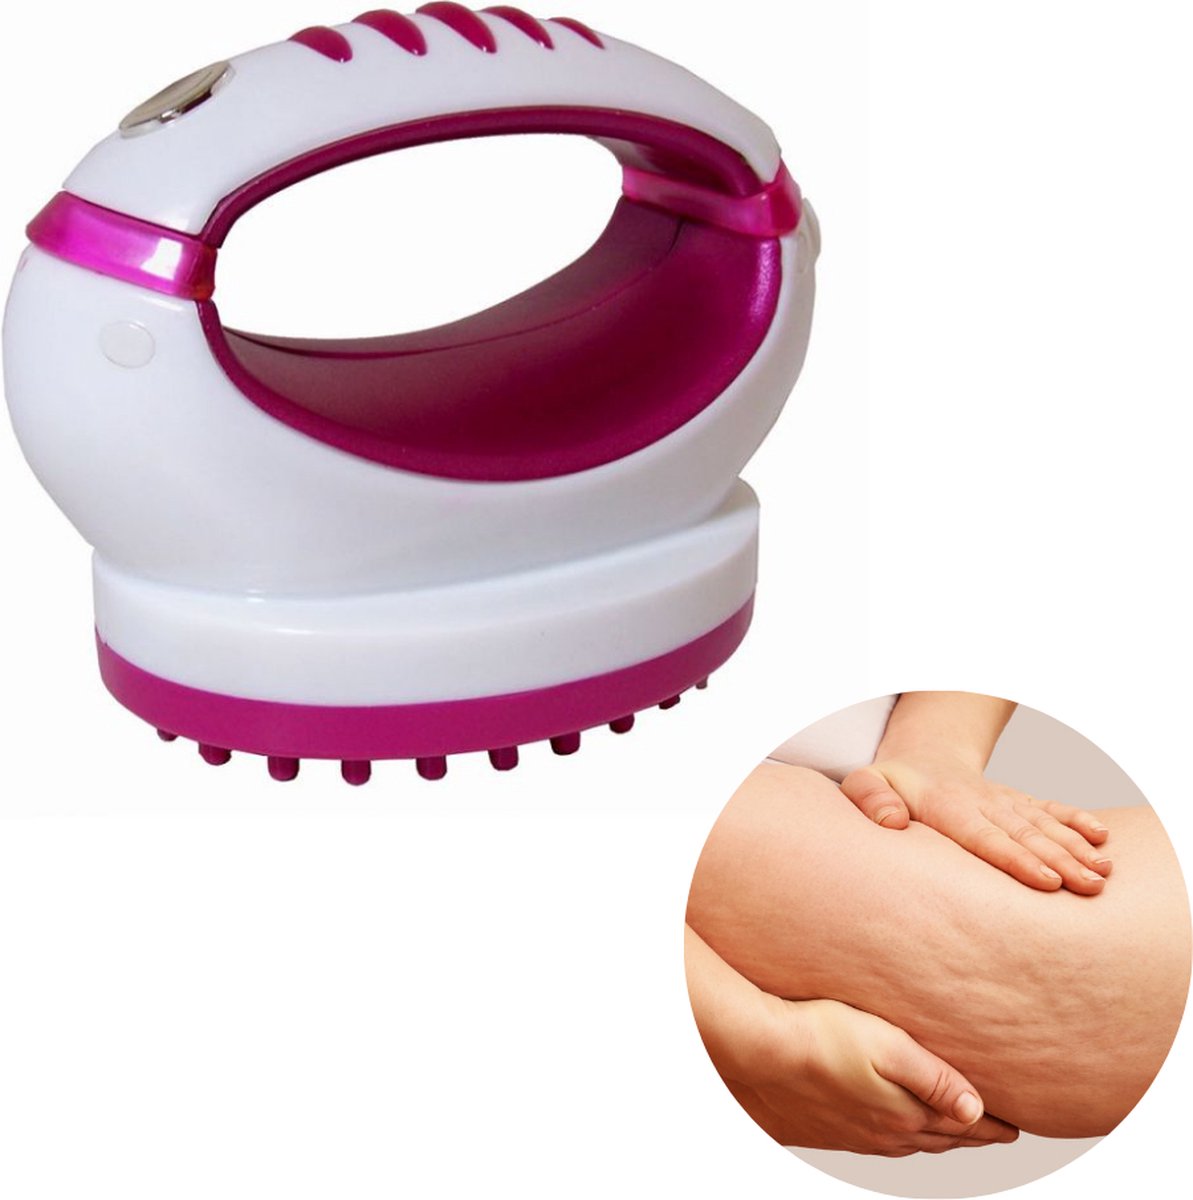 Cheqo® - Compact PRO Anti-Cellulitis Apparaat - Krachtige Massageapparaat - Cupping Therapie voor Gladdere Huid - Draagbaar en Comfortabel - Afmeting: 12 x 9 x 7 cm - Exclusief Batterijen - Ultiem Huidverzorgingsproduct - Cheqo